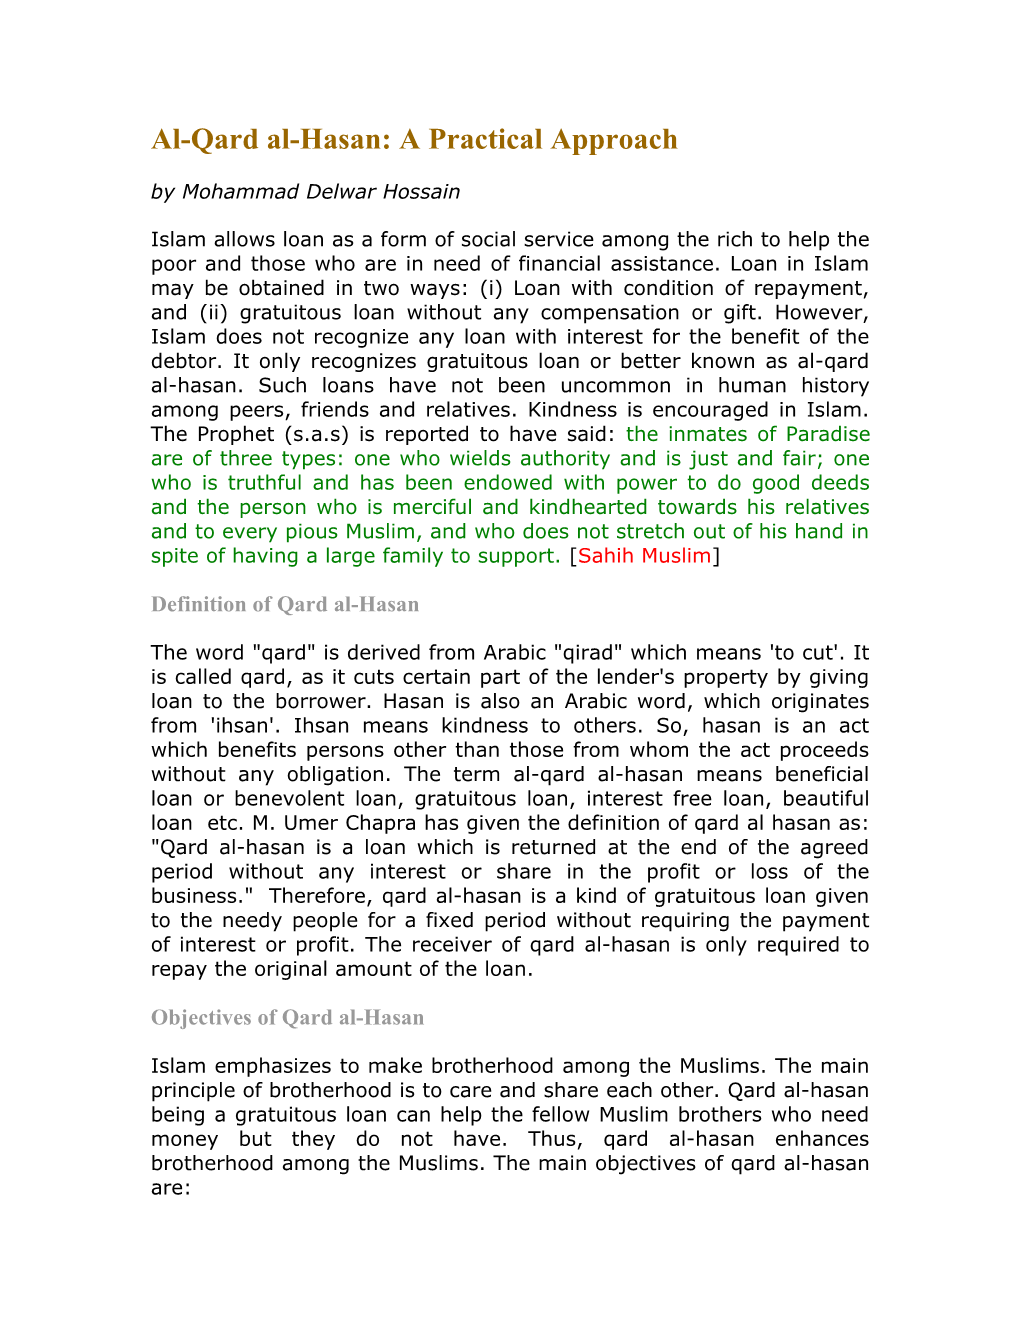 Al-Qard Al-Hasan: a Practical Approach